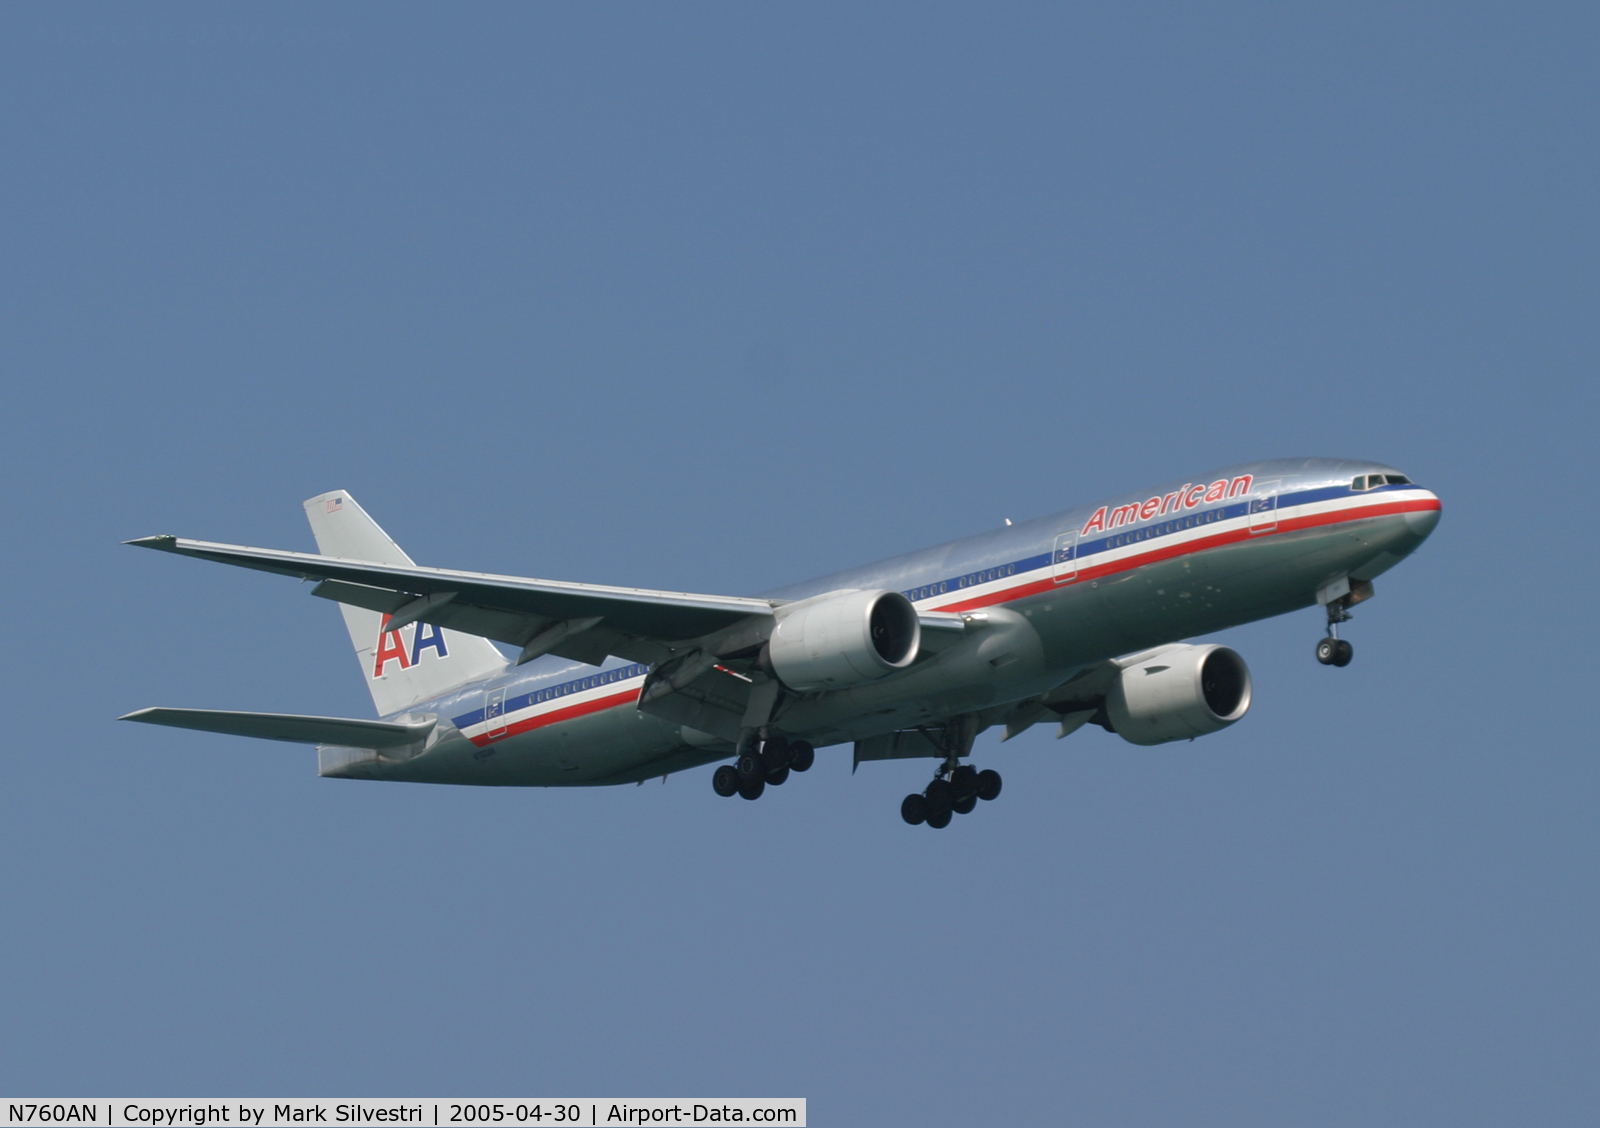 N760AN, 2002 Boeing 777-223 C/N 31477, Ft Lauderdale 2005